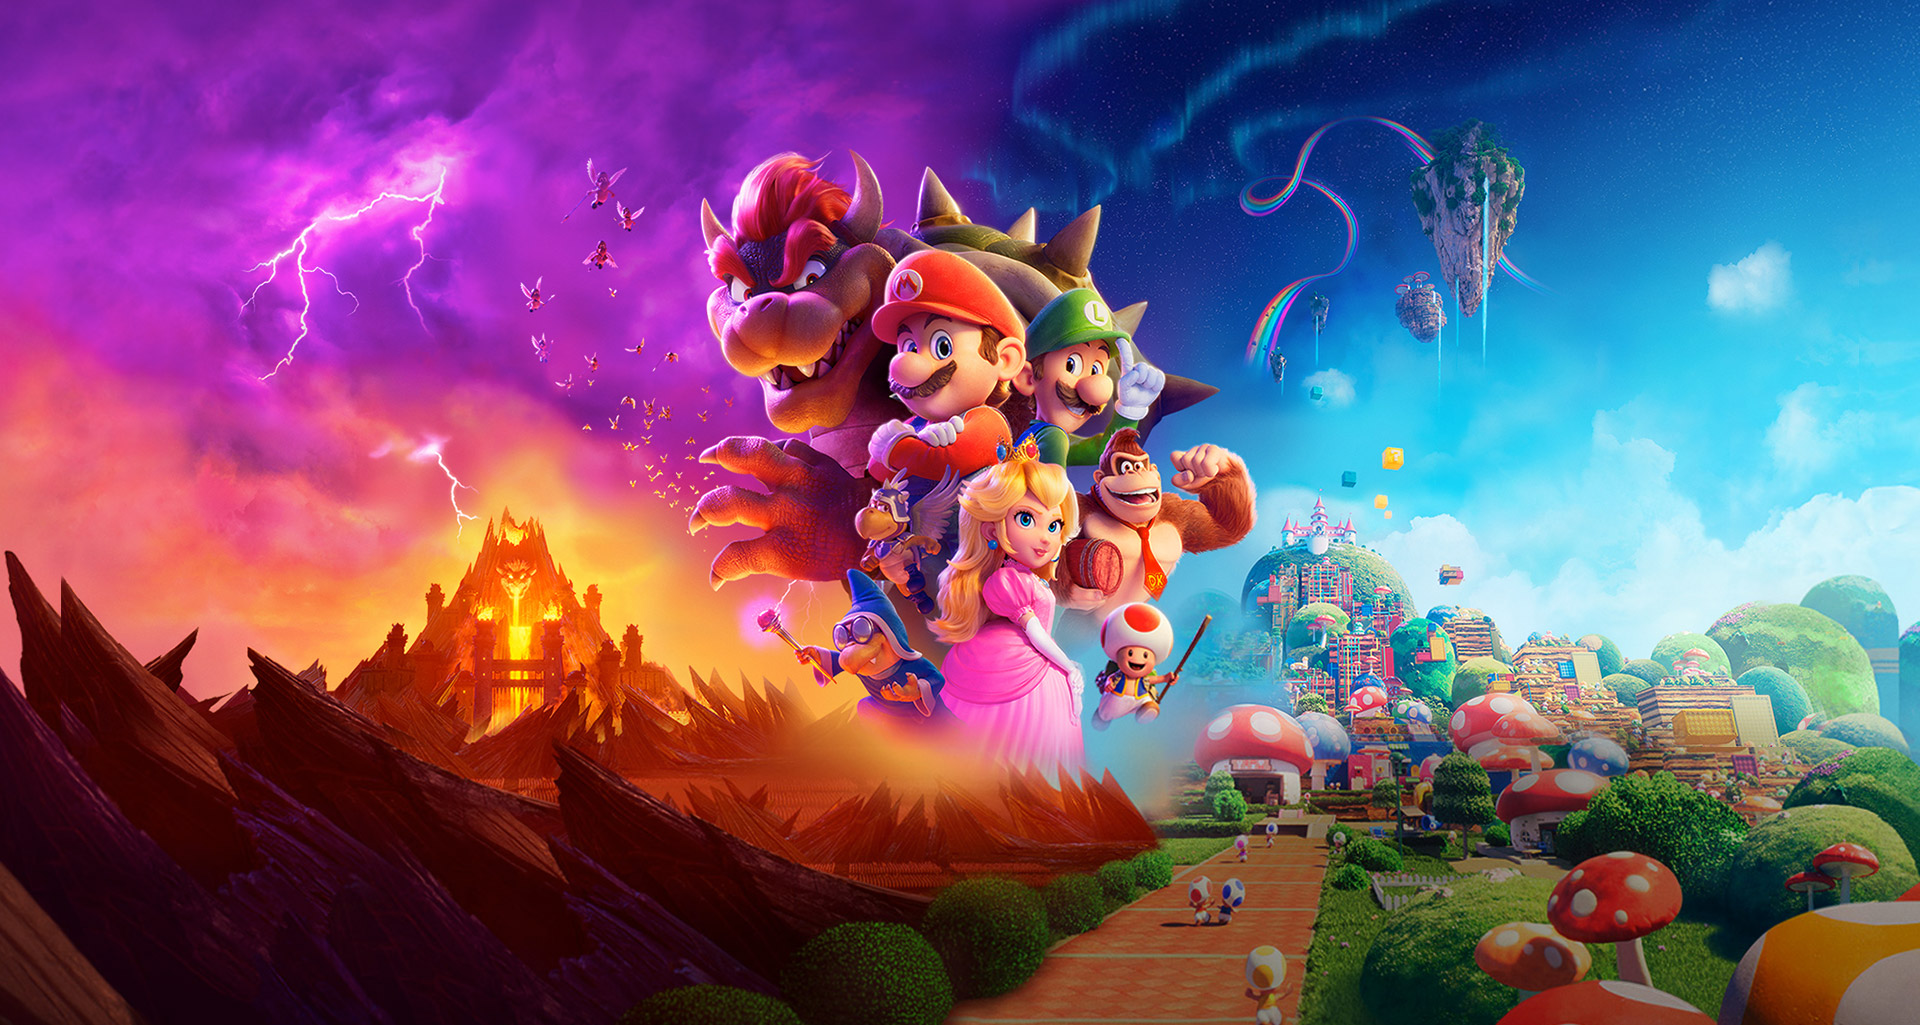 Nova cena de Super Mario Bros mostra o Reino do Cogumelo; assista